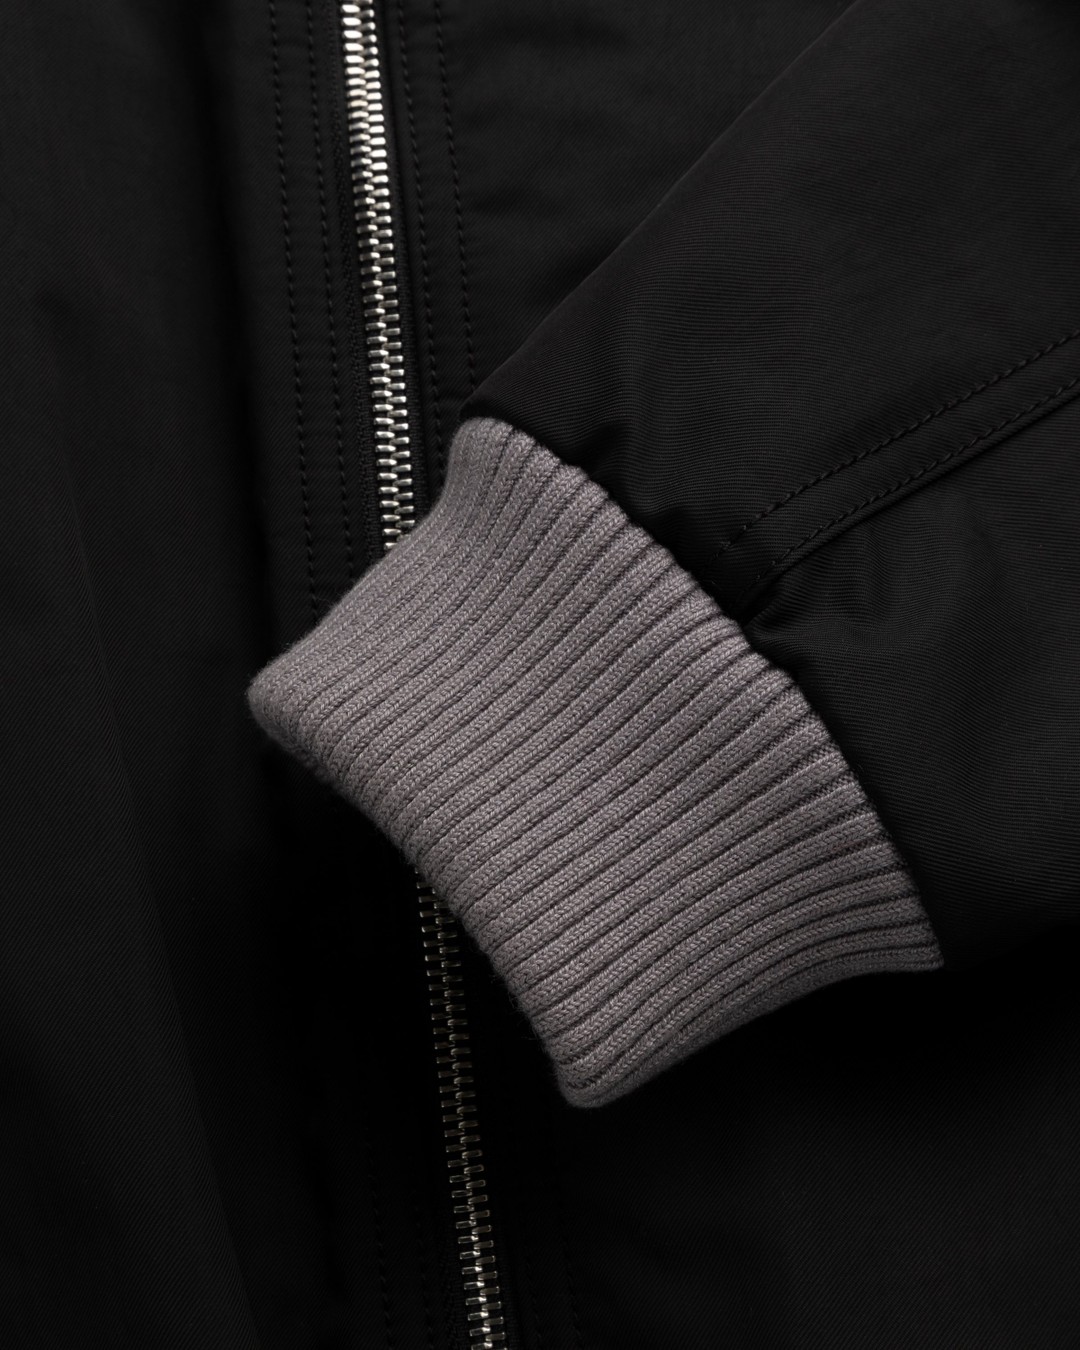 Kenzo – Varsity Bomber Jacket Black - Outerwear - Black - Image 4